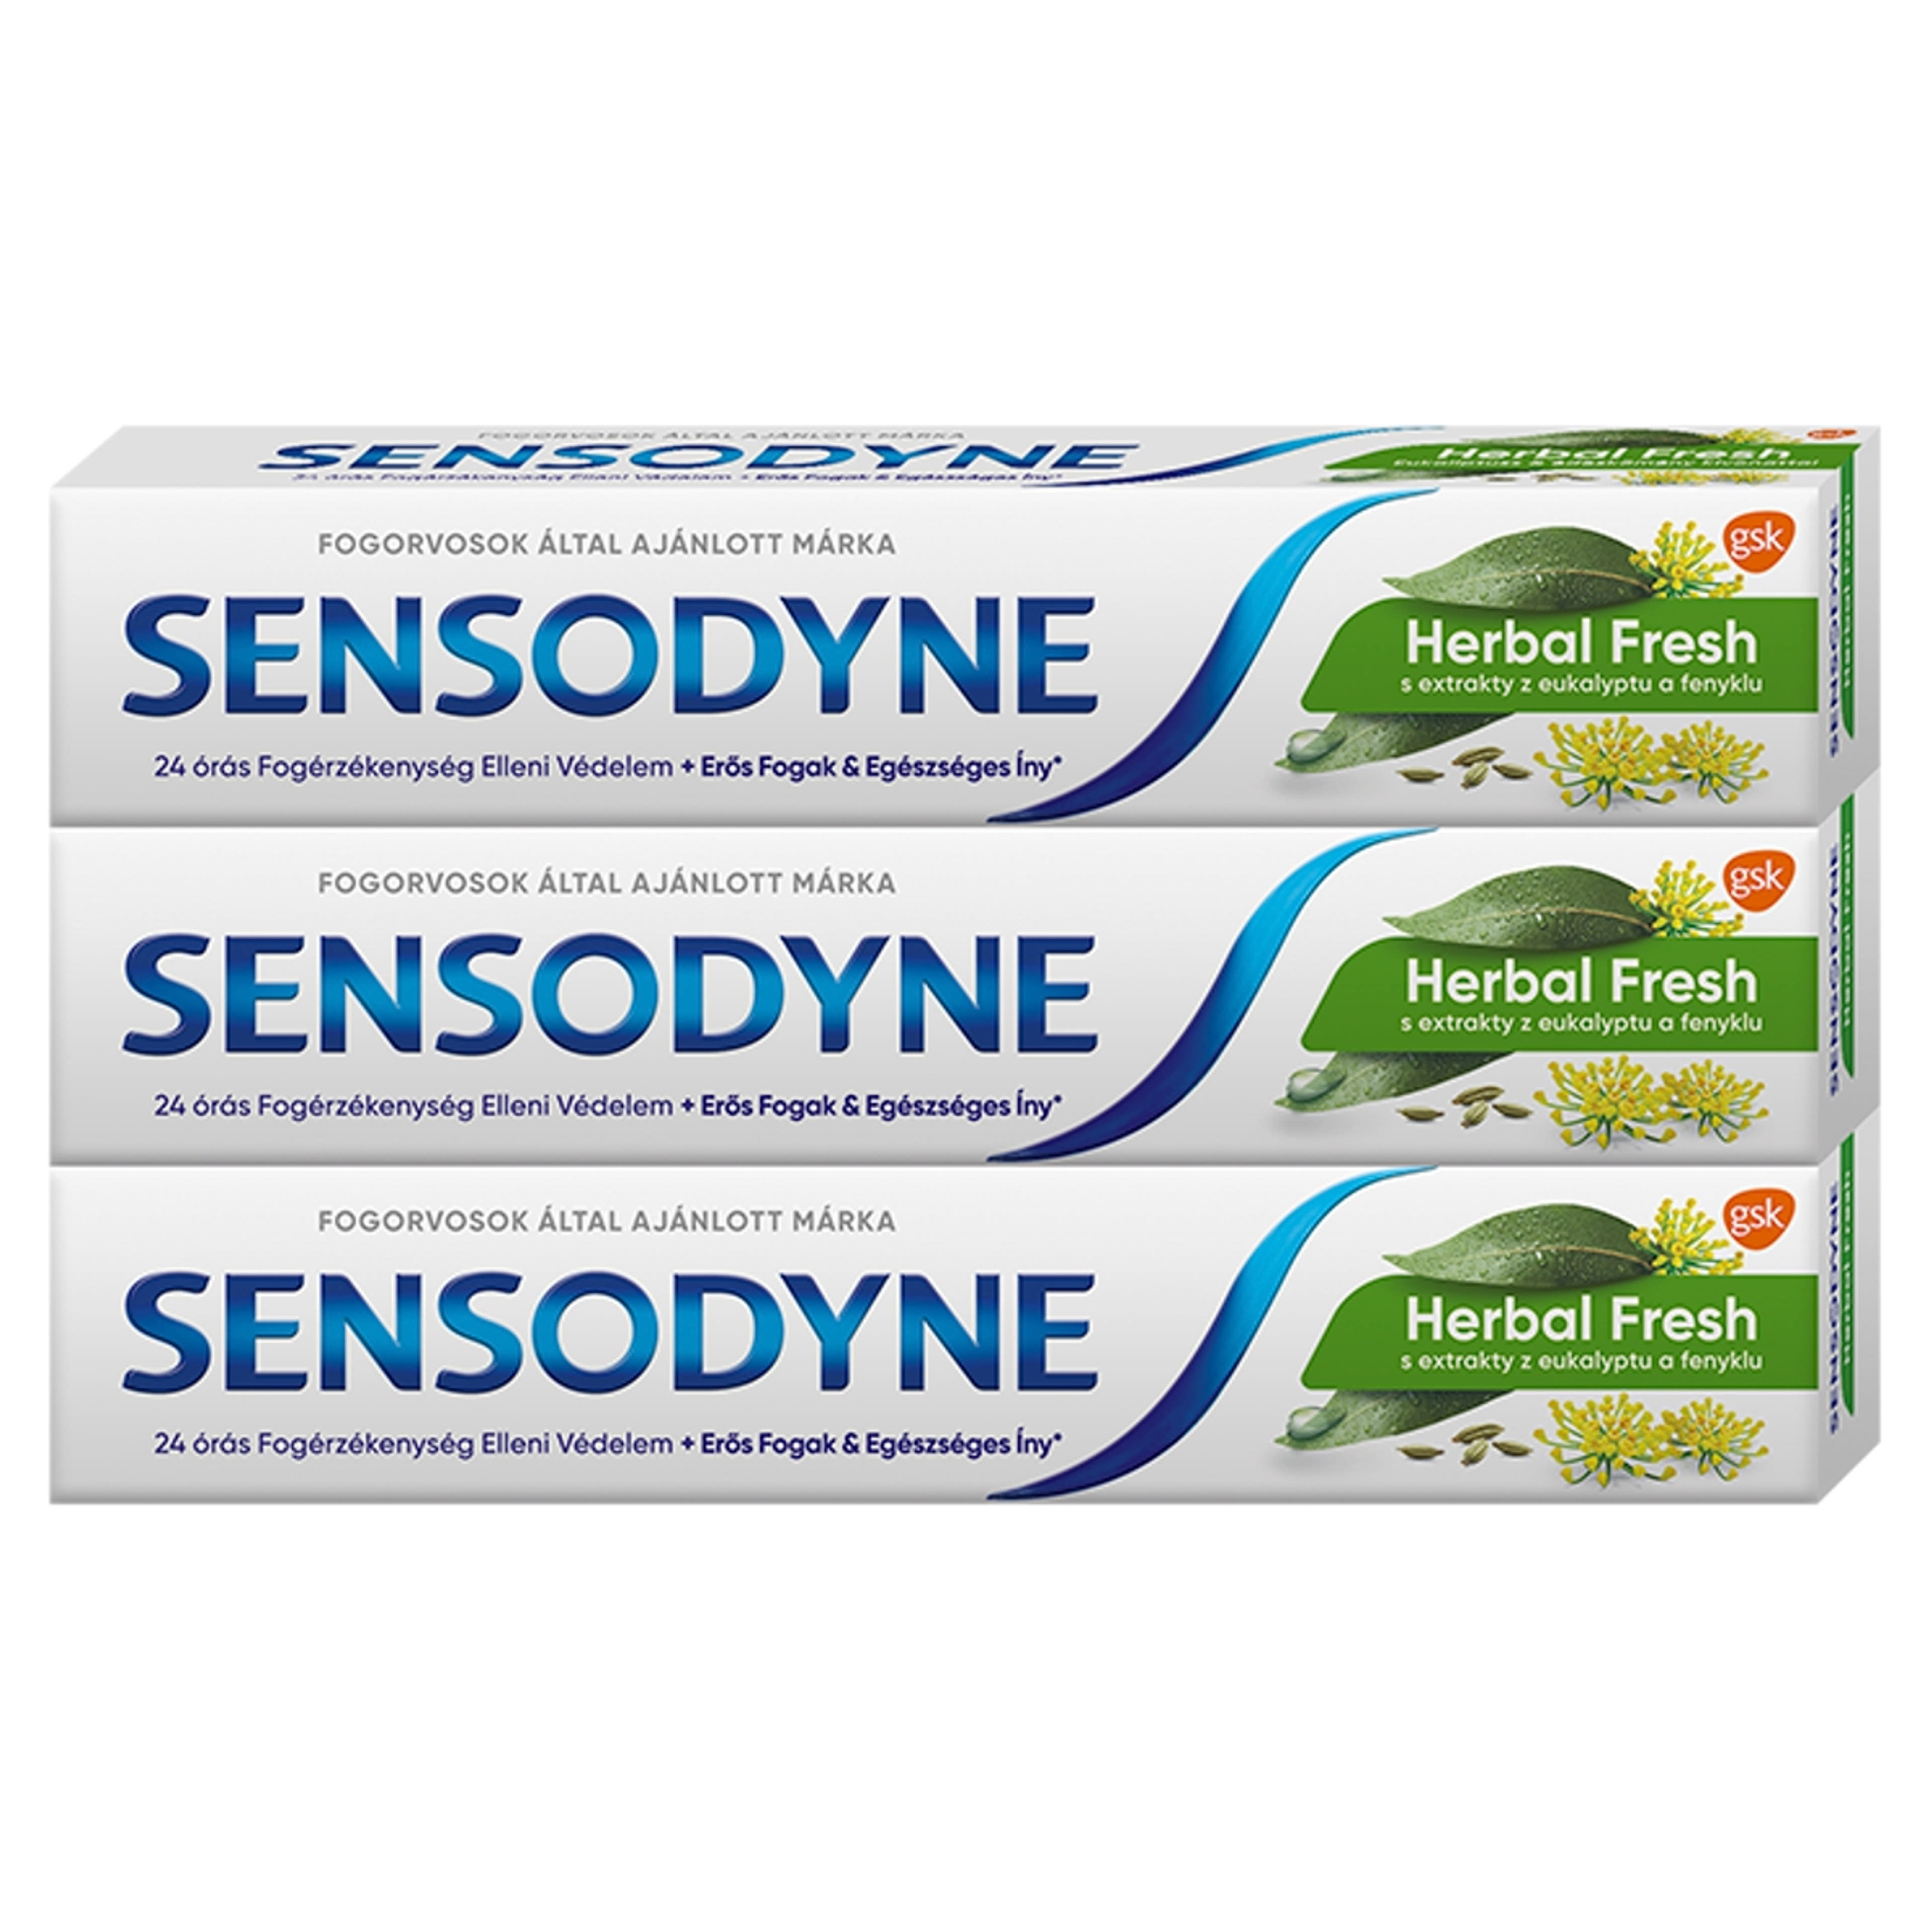 Sensodyne Herbal Fresh fogkrém Trio pack 3x75 ml - 225 ml